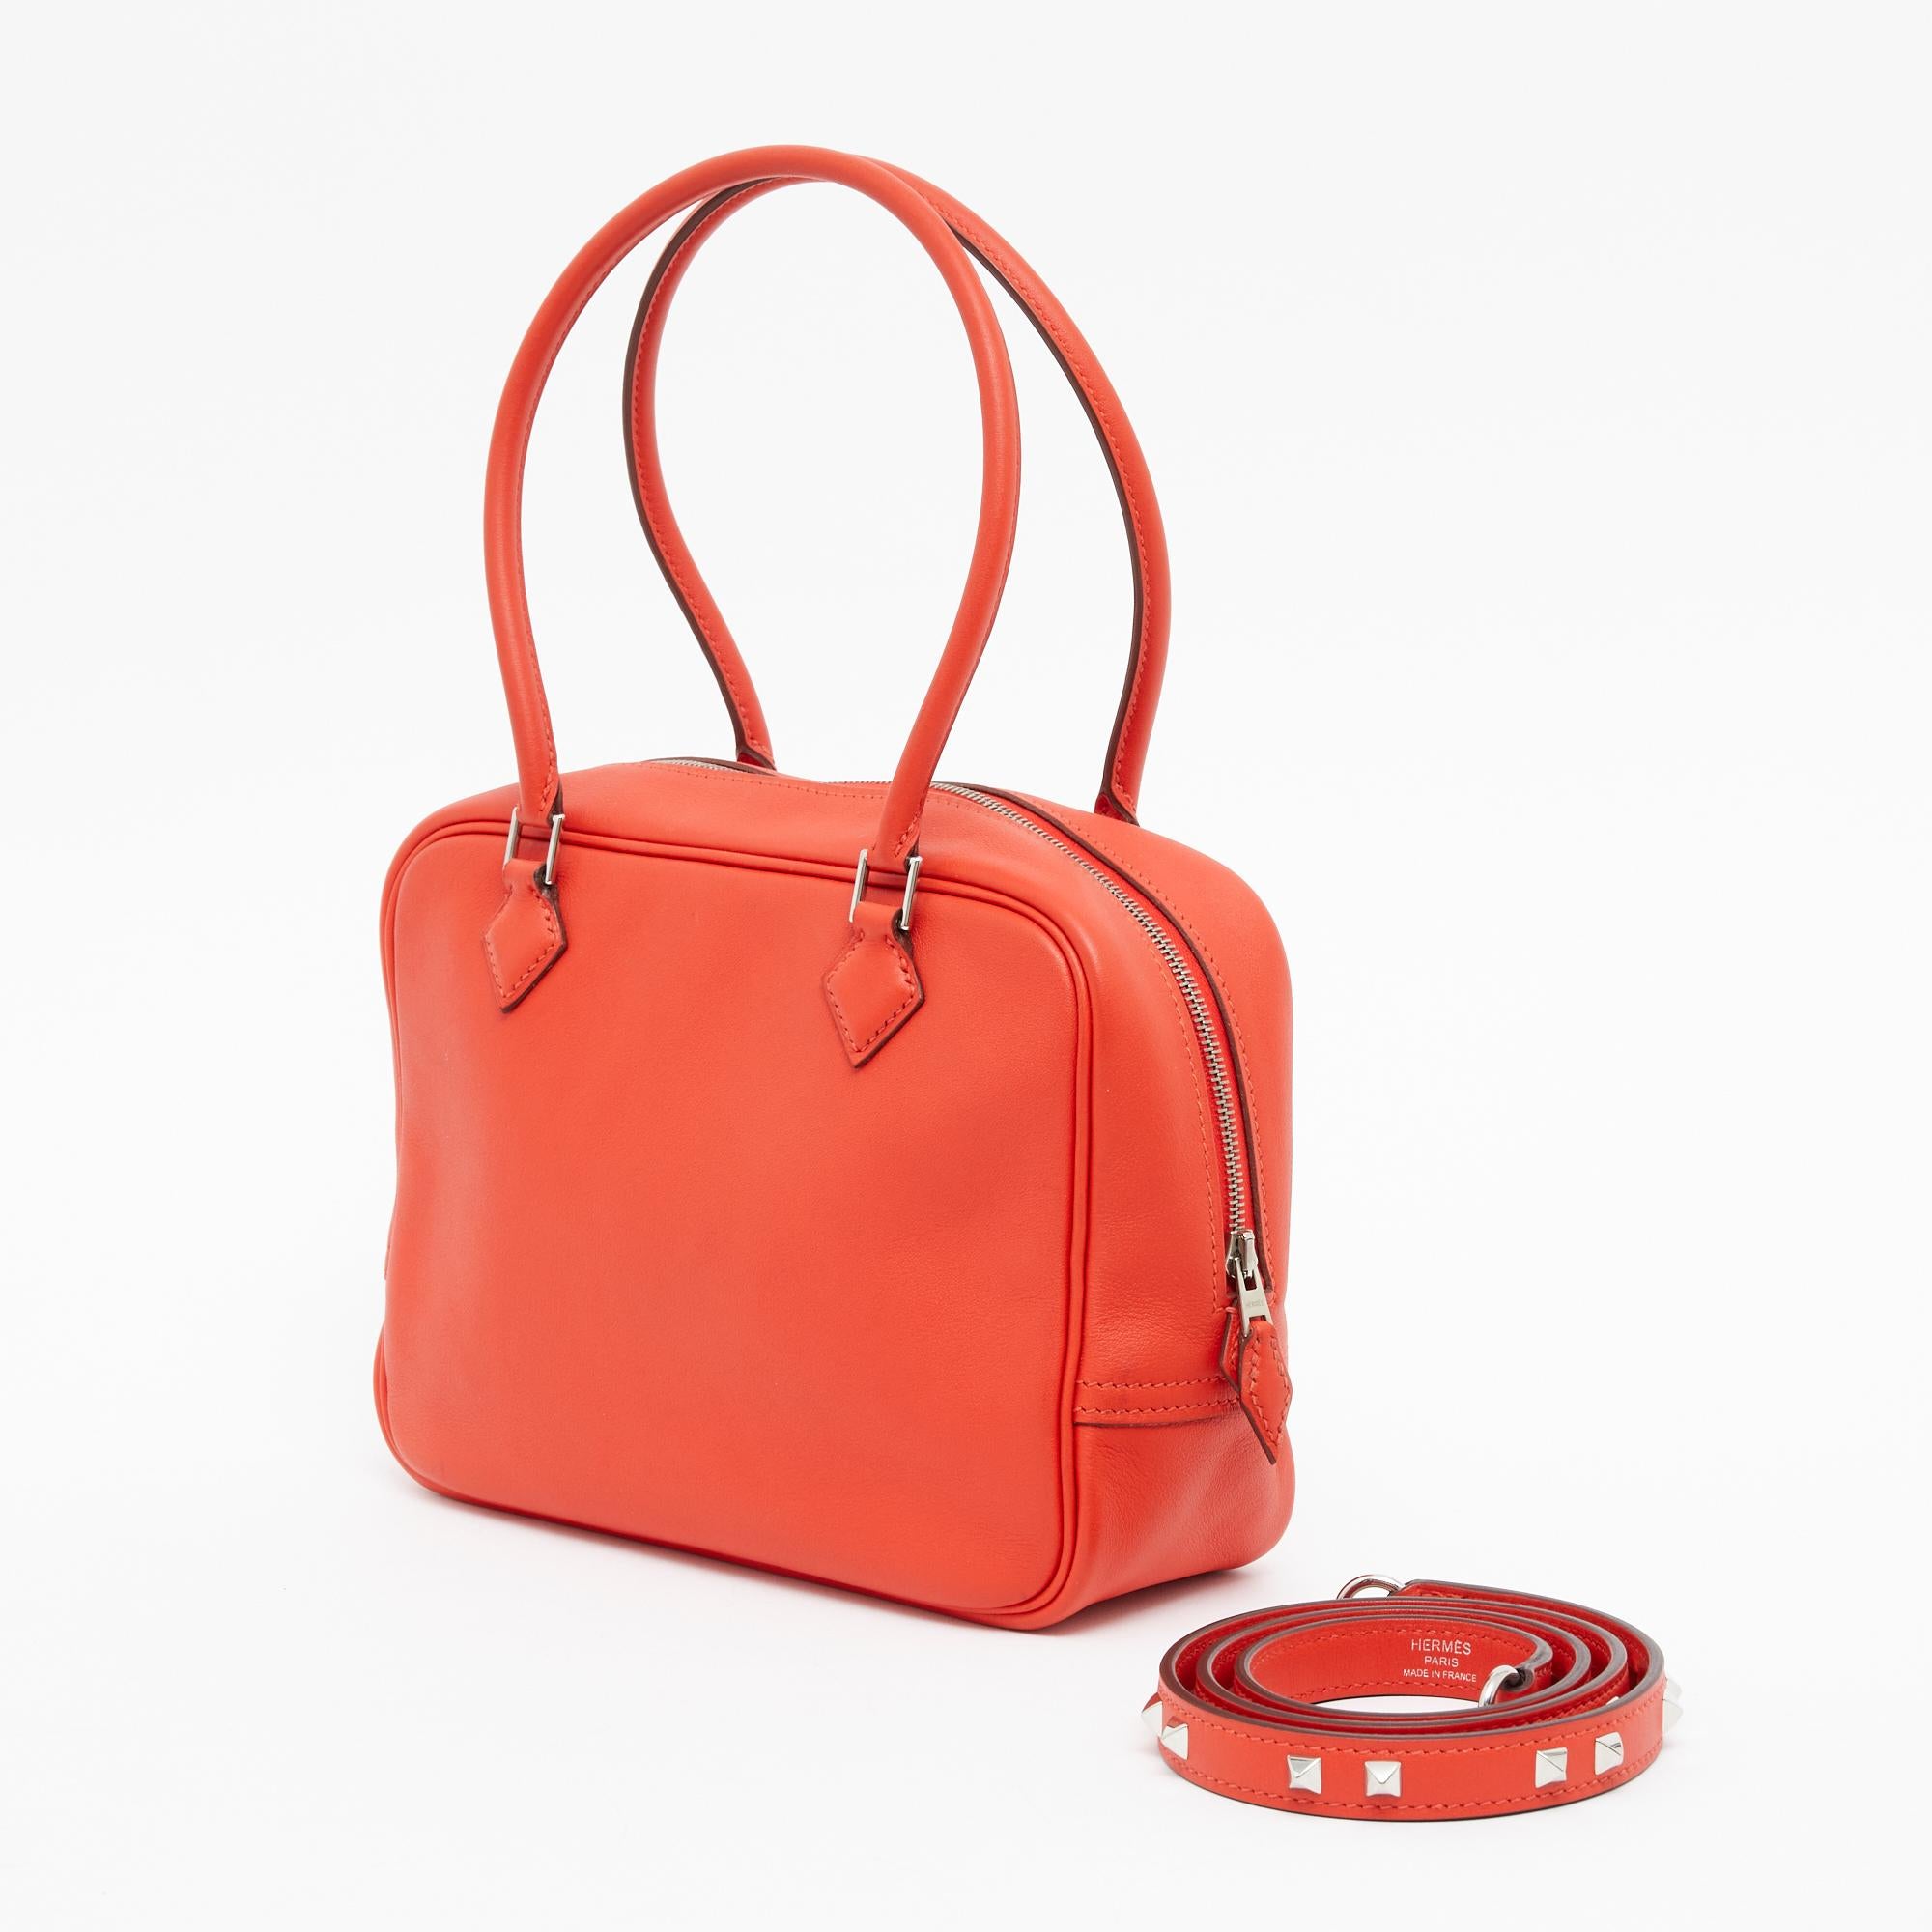 Hermès Taschenmodell Plume TPM Format in Swift Leder Farbe Capucine, d.h. ein sehr leuchtendes Rot-Orange, silberfarbenes Metallwerk, Innenausstattung in koordiniertem Leder und Schulterriemen Mini Dog Modell in koordiniertem Leder und Metallwerk